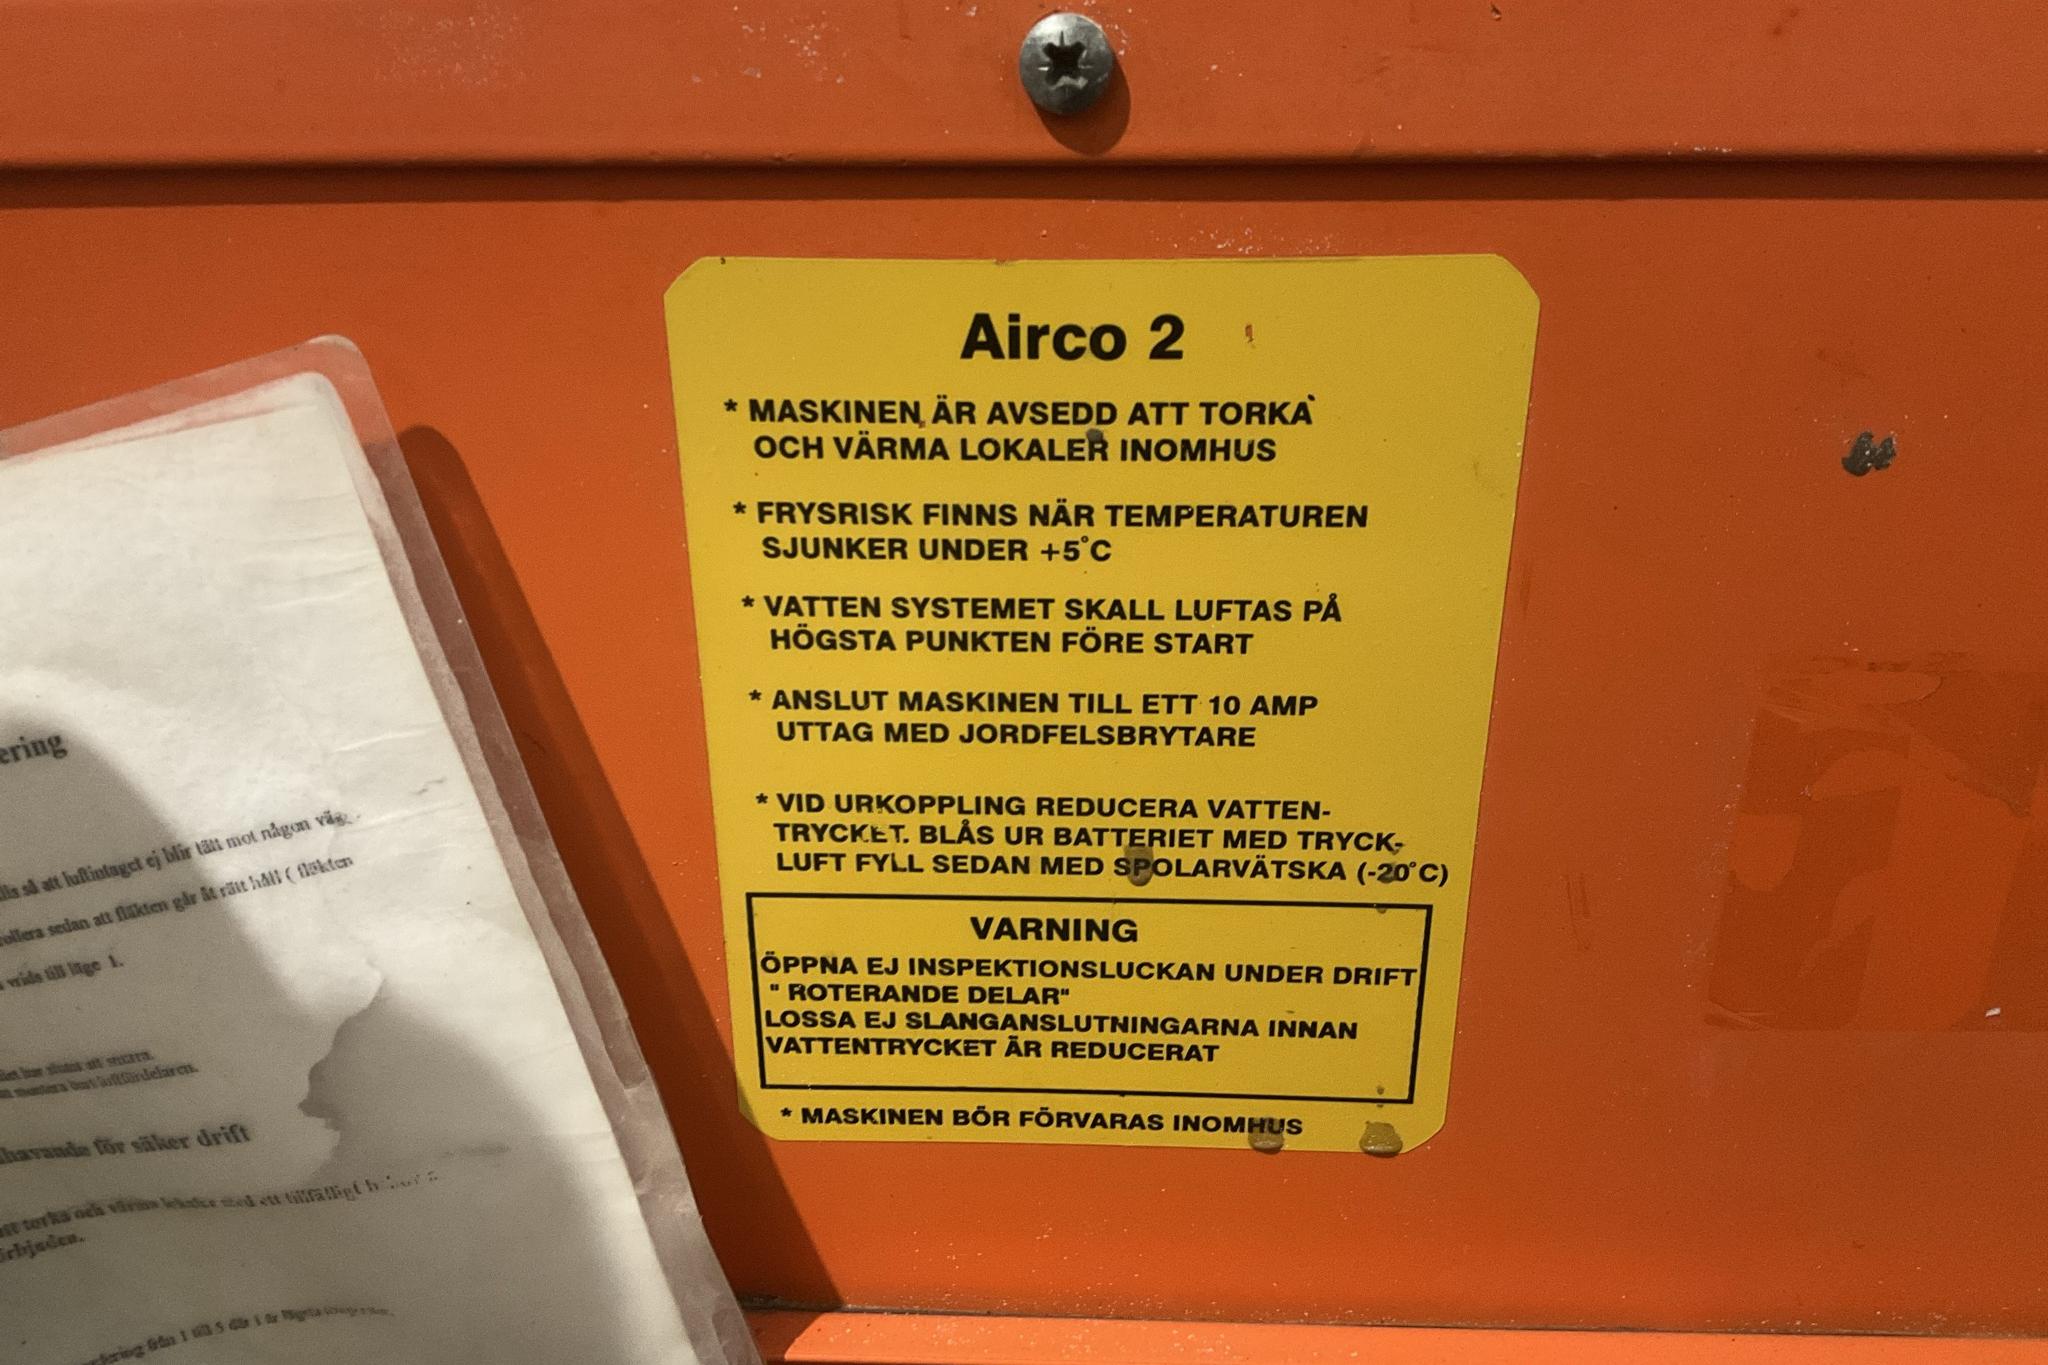 OBM-KIHLSTRÖM AB AIRCO 2 - Luftvärmare 4 stycken - 0 km